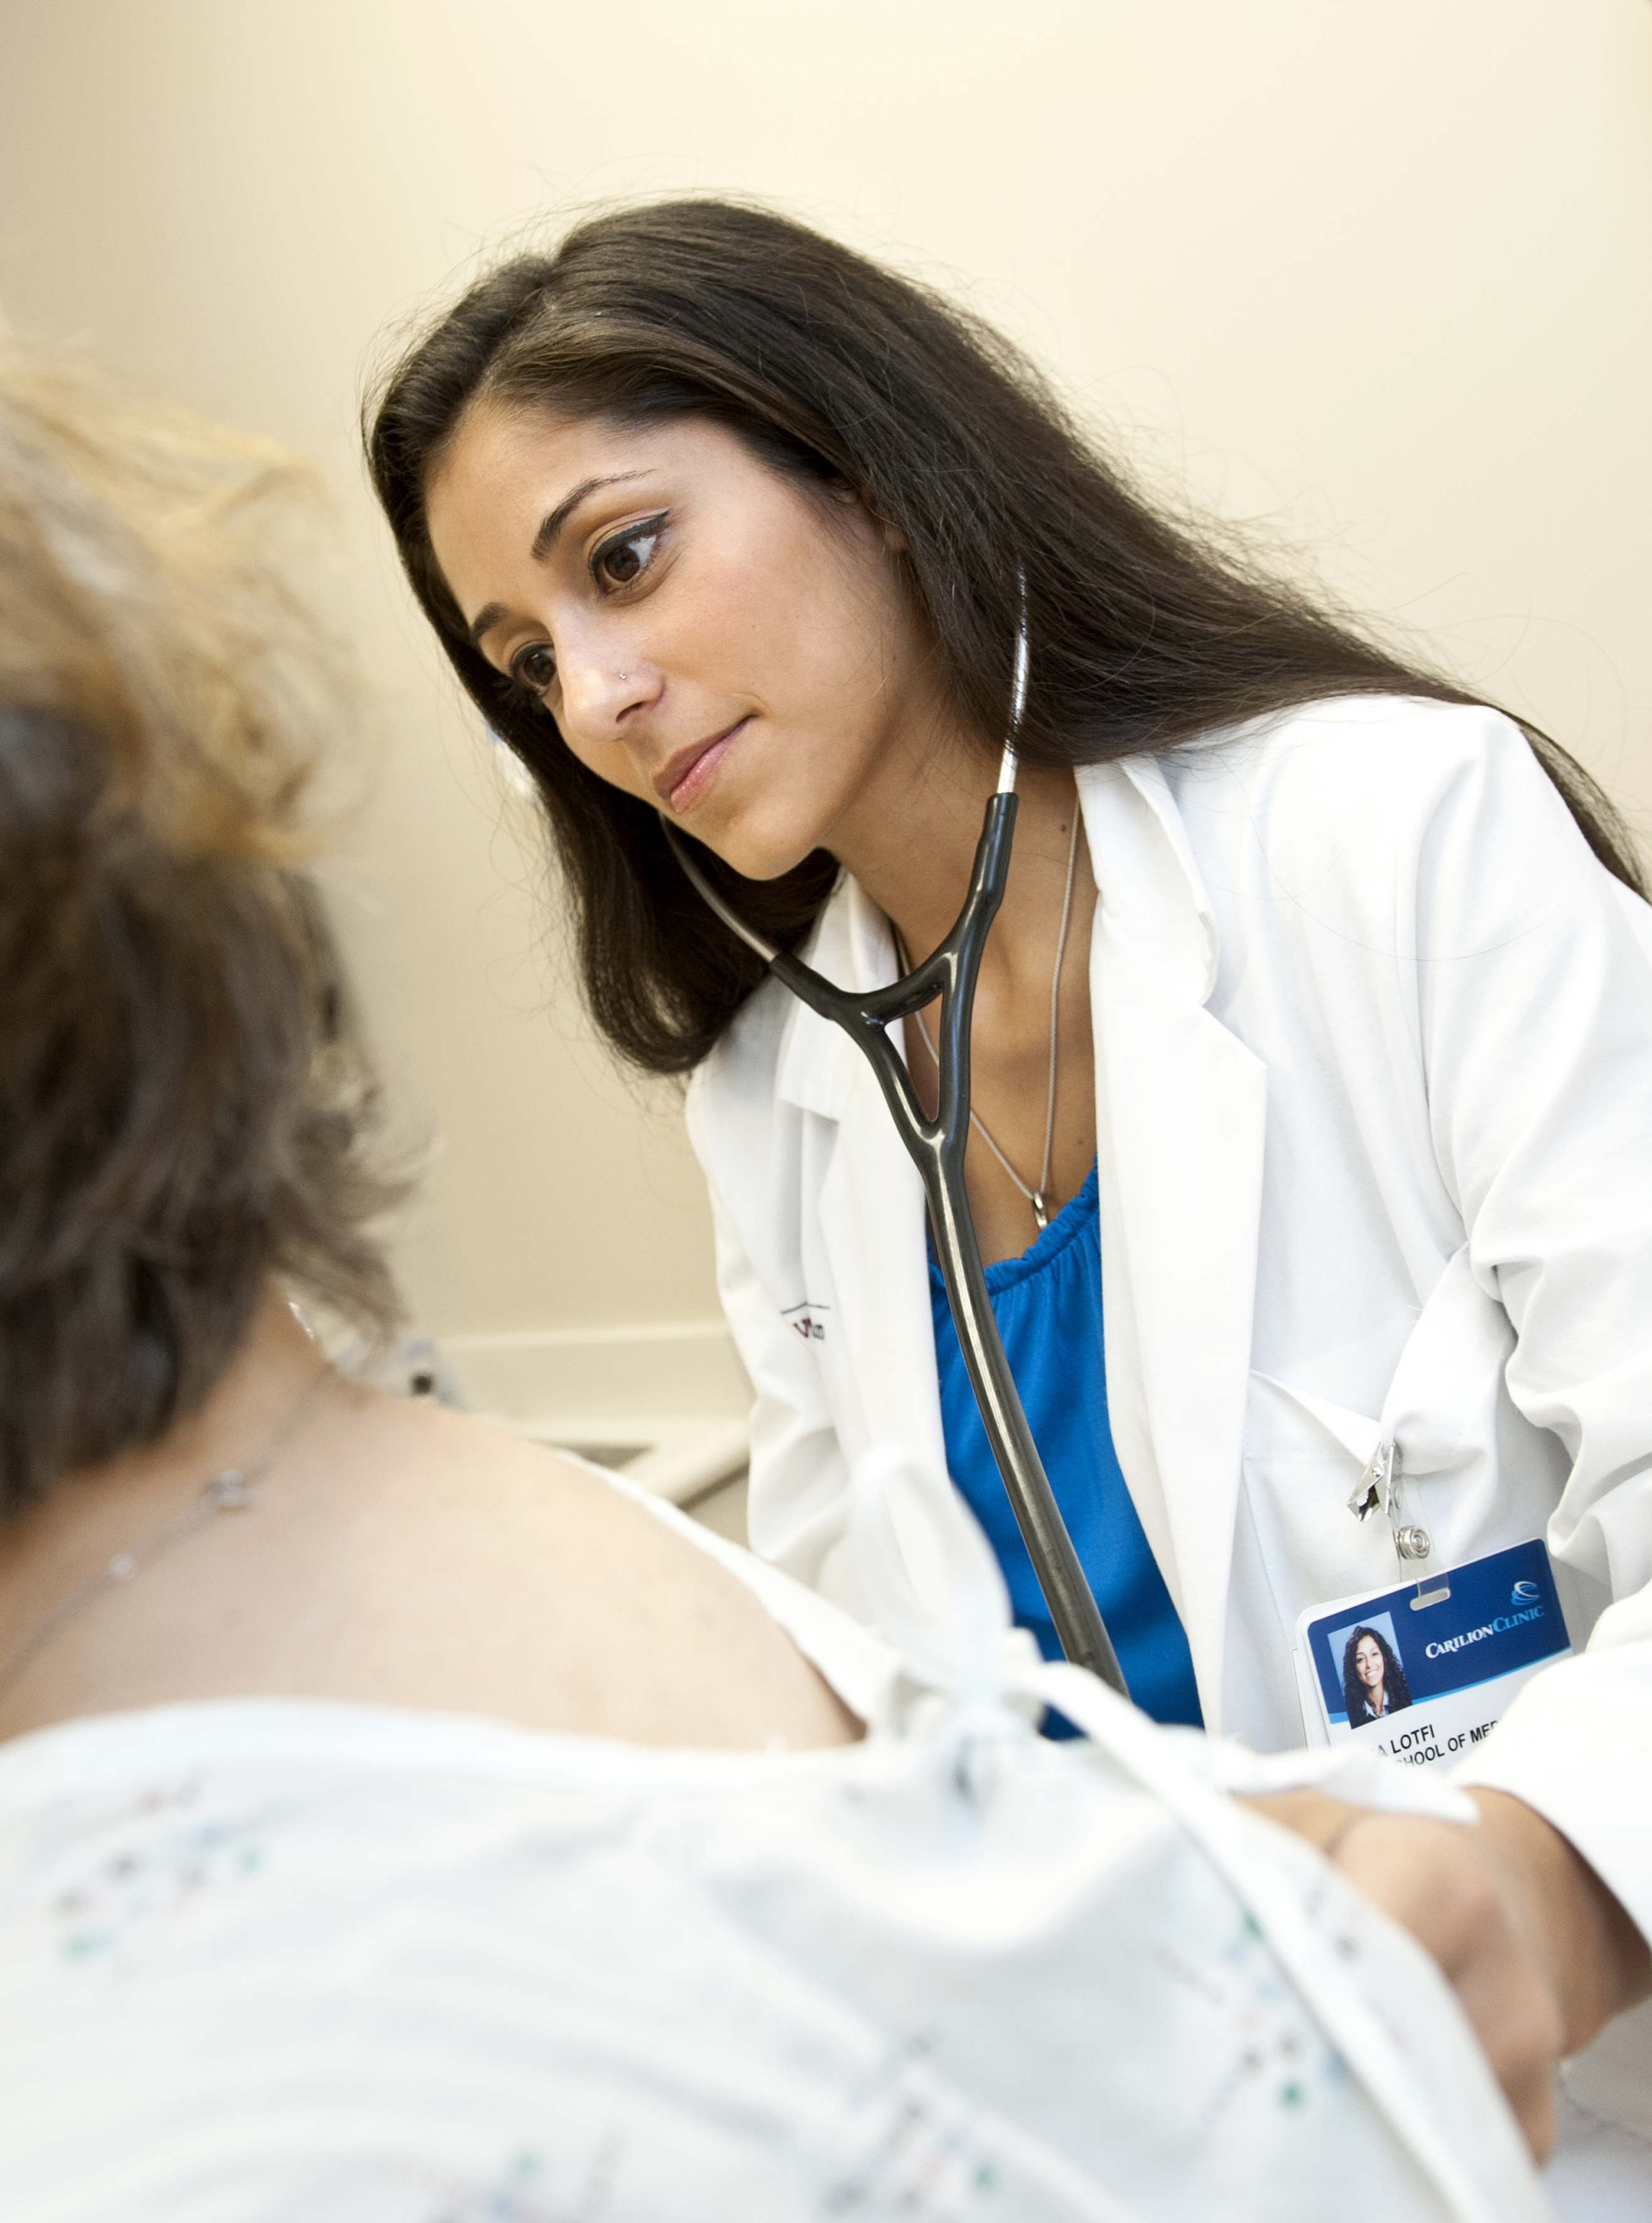 Mina Lotfi examines a patient